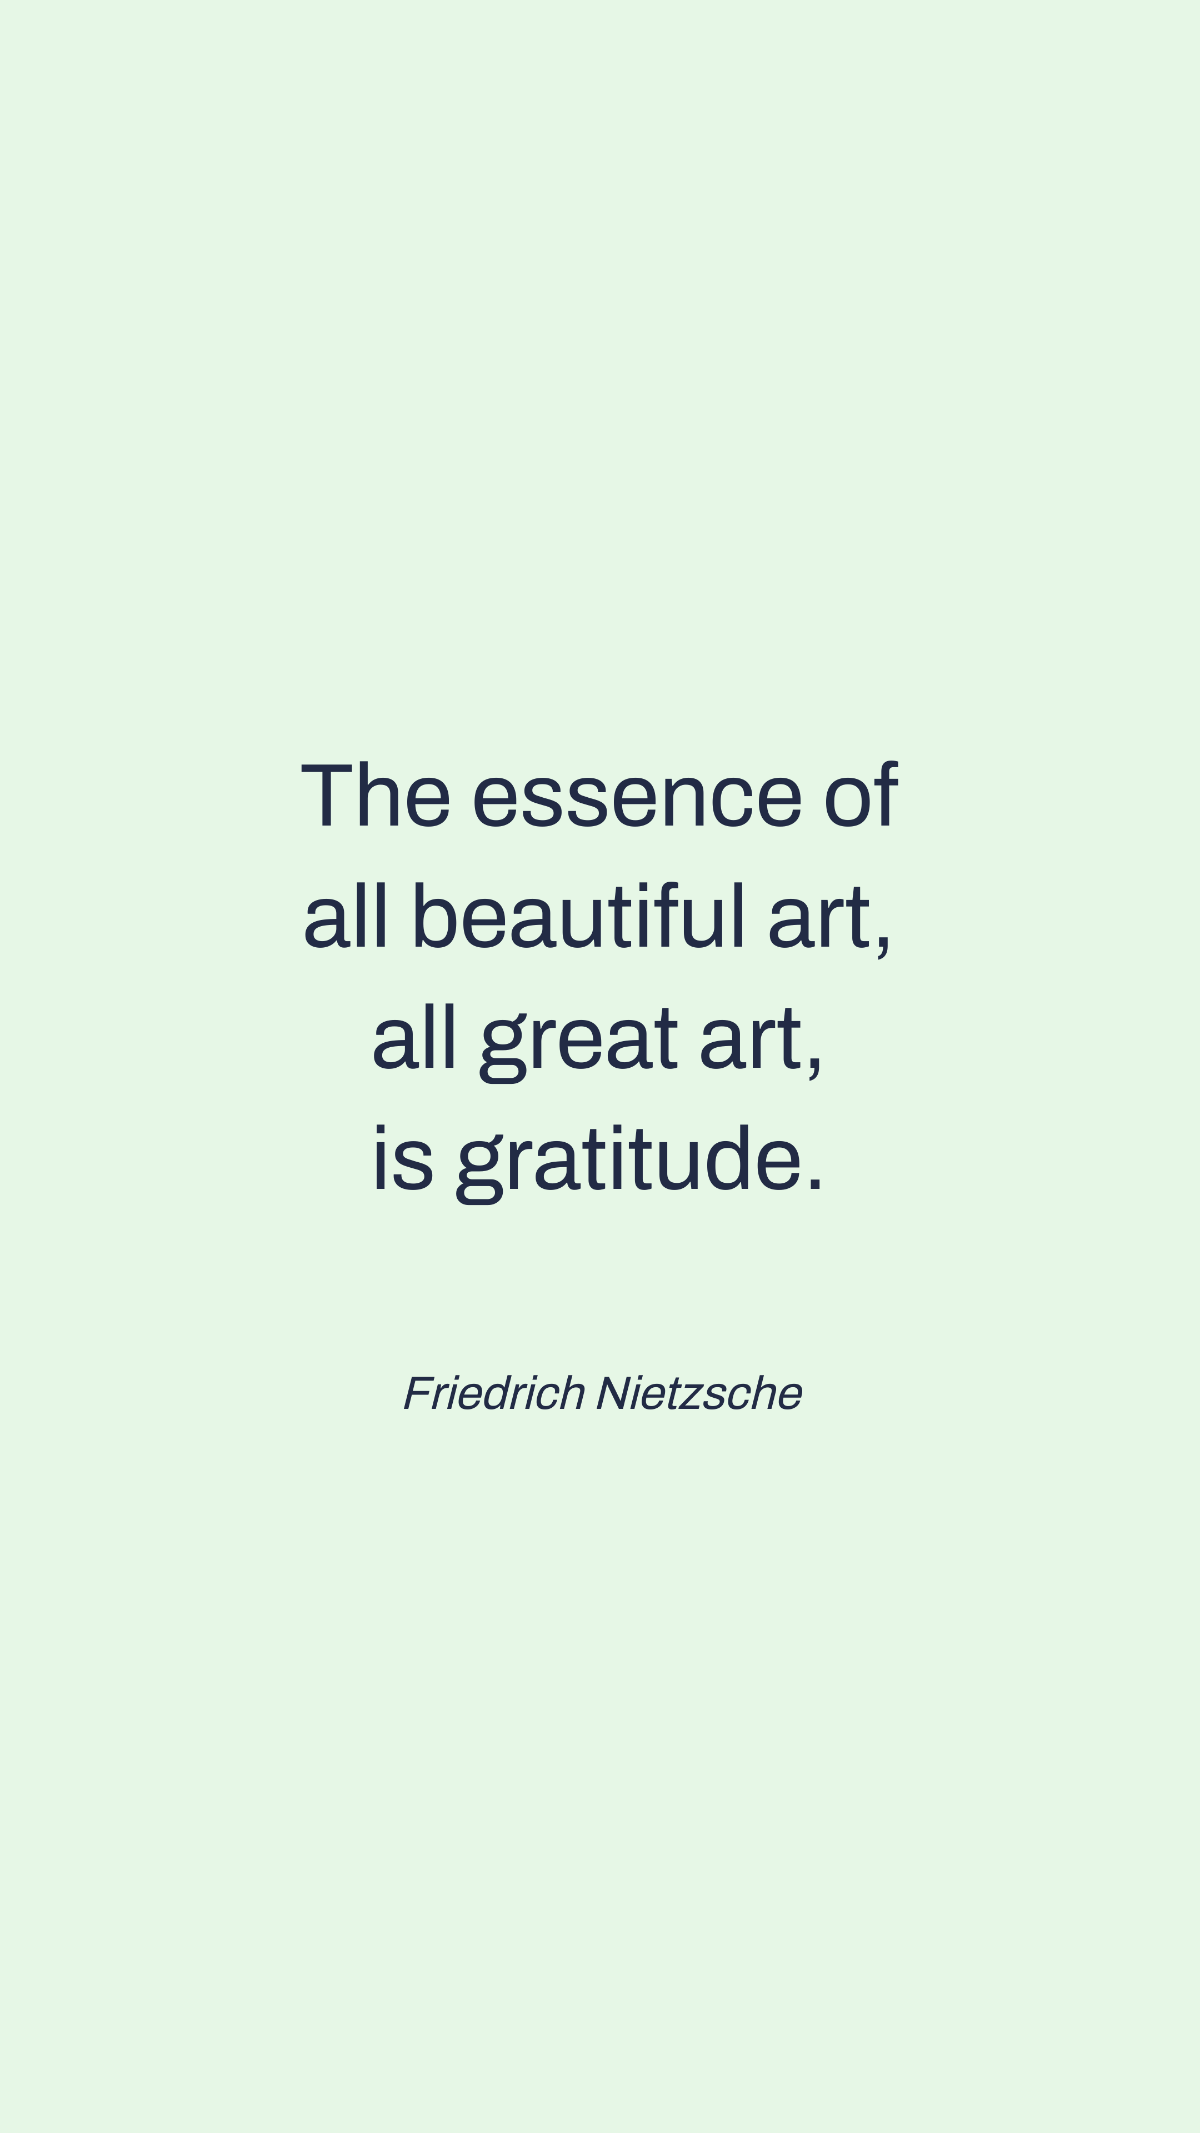 Free Friedrich Nietzsche - The essence of all beautiful art, all great art, is gratitude. Template